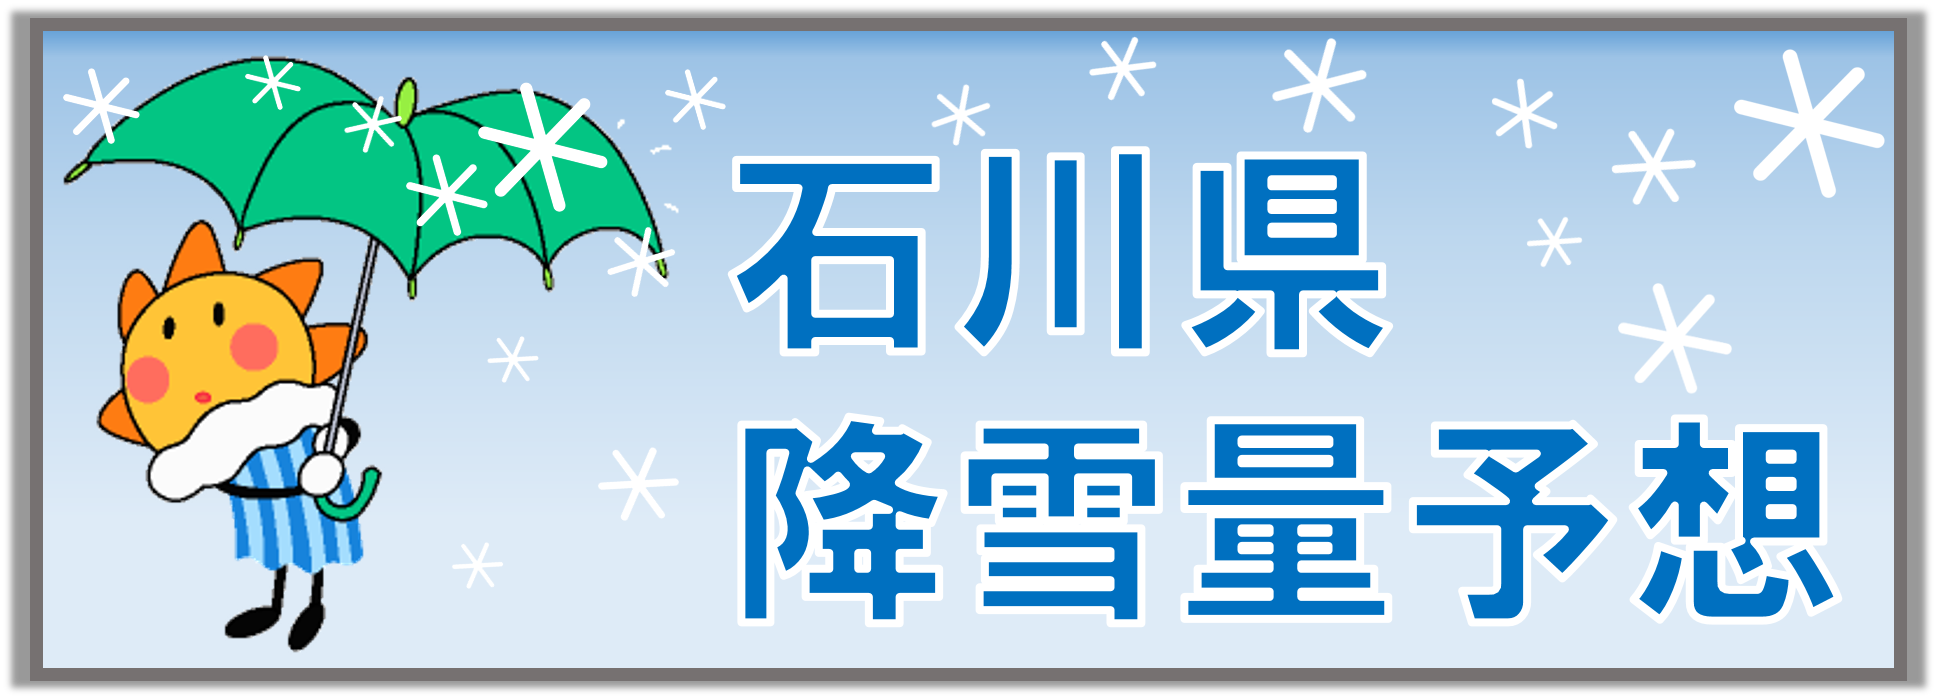 石川県の降雪量予想